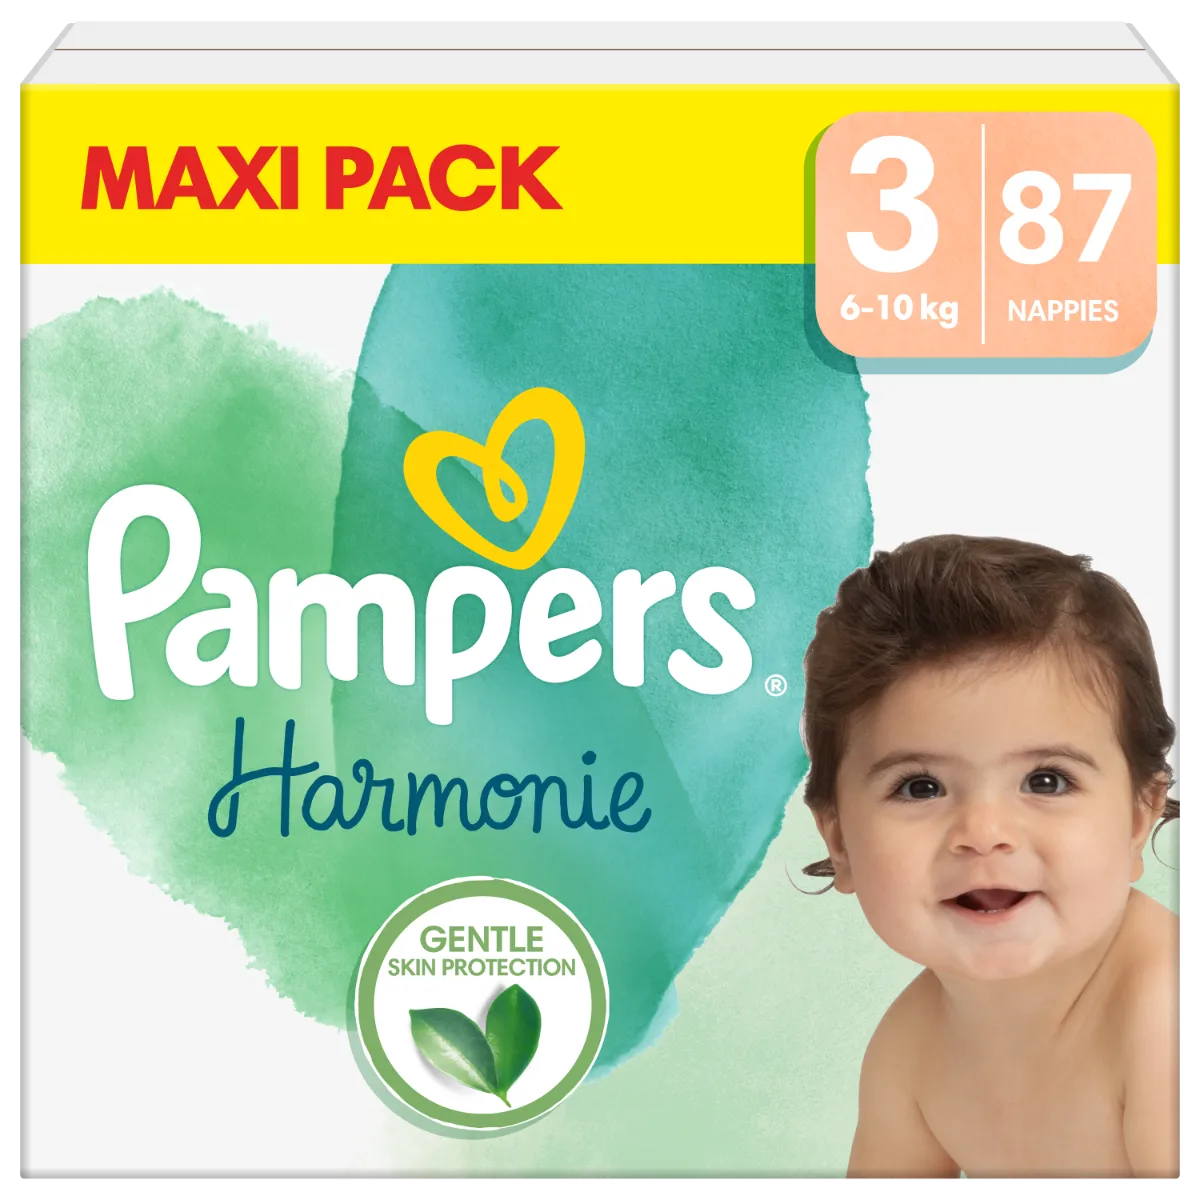 Pampers Harmonie New Baby pieluszki rozmiar 3, 87 szt.